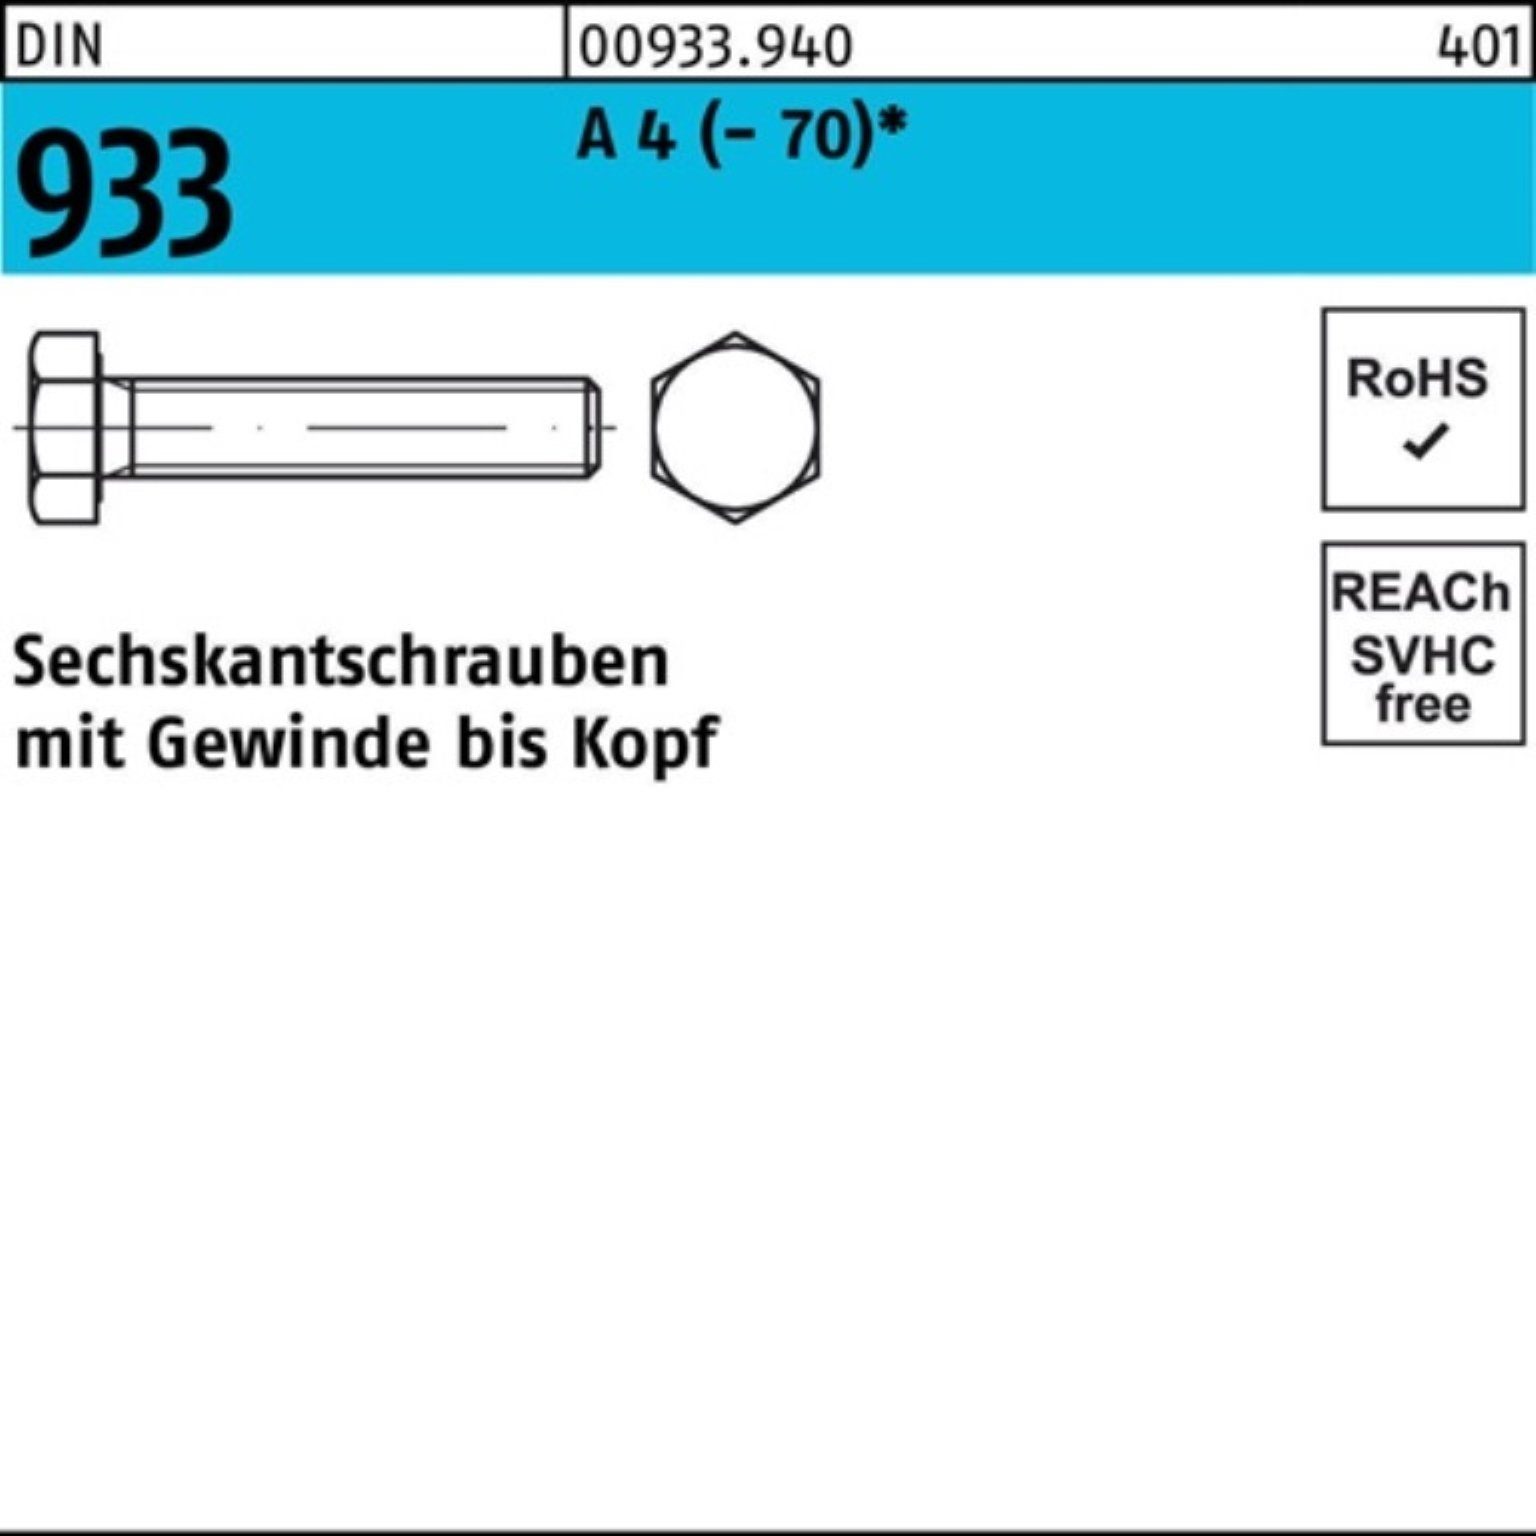 A (70) 933 100er DIN M24x Sechskantschraube D Pack 4 Sechskantschraube Reyher VG 110 1 Stück